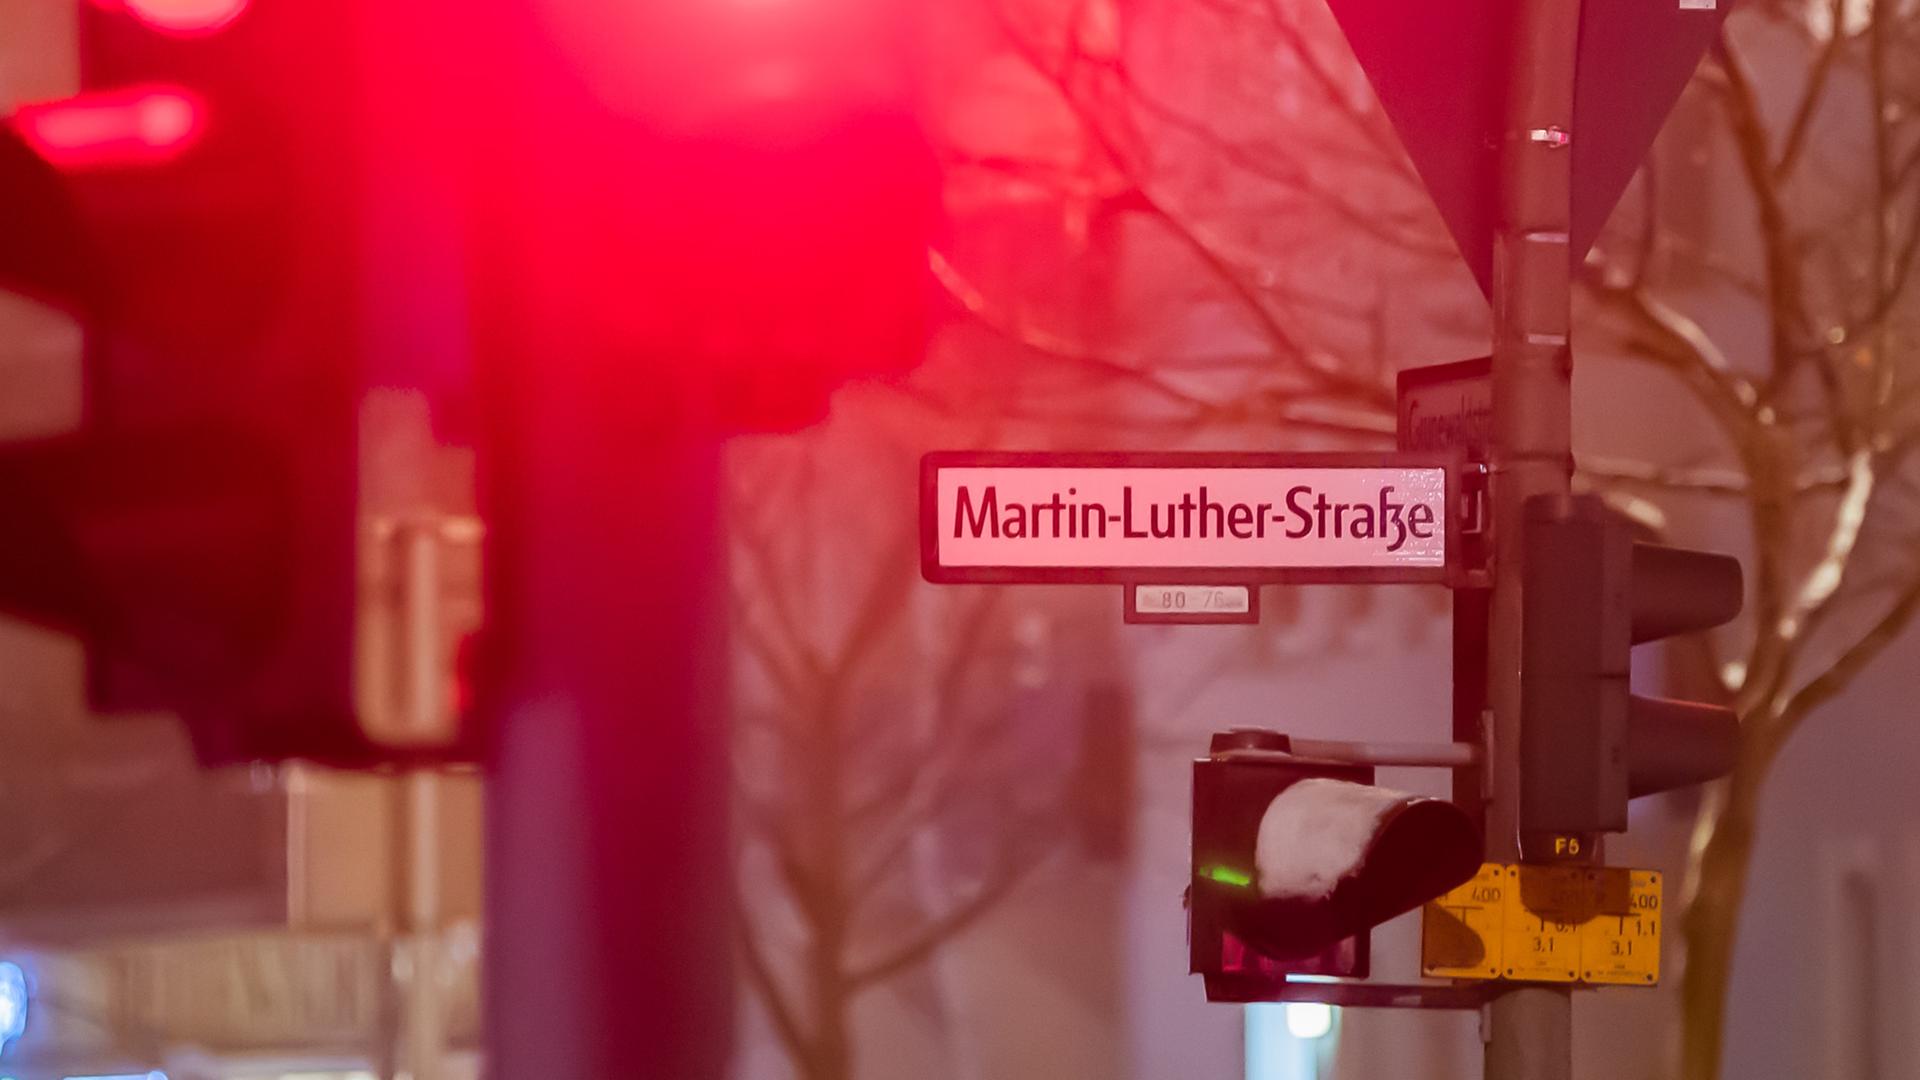 Das Straßenschild der Martin-Luther-Straße in Berlin-Schöneberg im Dunklen im Winter. Schnee liegt auf einer Ampel, eine andere zeigt rot.